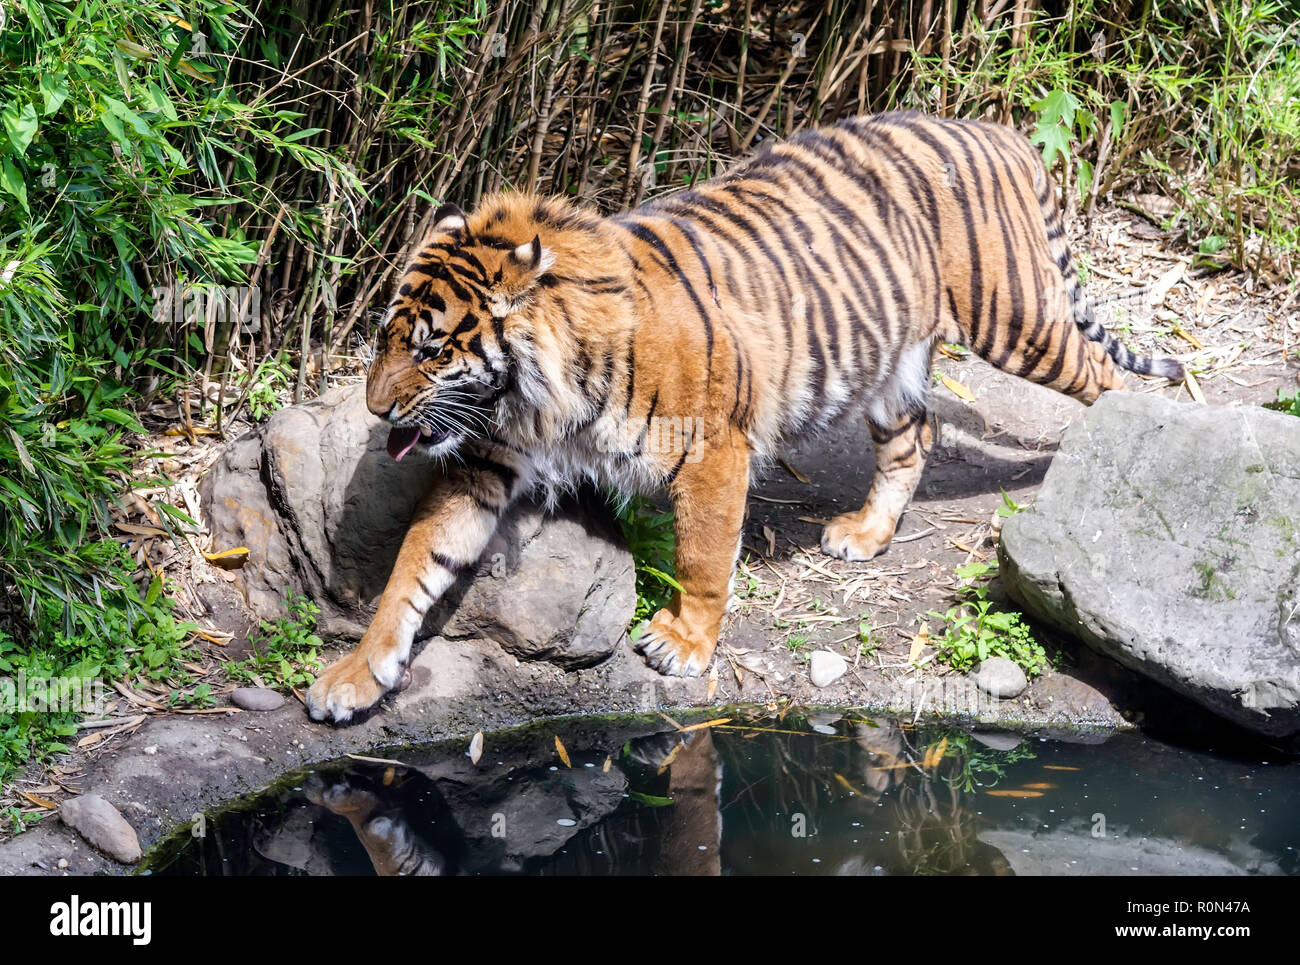 La tigre di Sumatra (Panthera tigris sondaica) camminando lungo il laghetto con la lingua fuori. La tigre ha un corpo muscoloso e è uno dei pochi striped cat Foto Stock